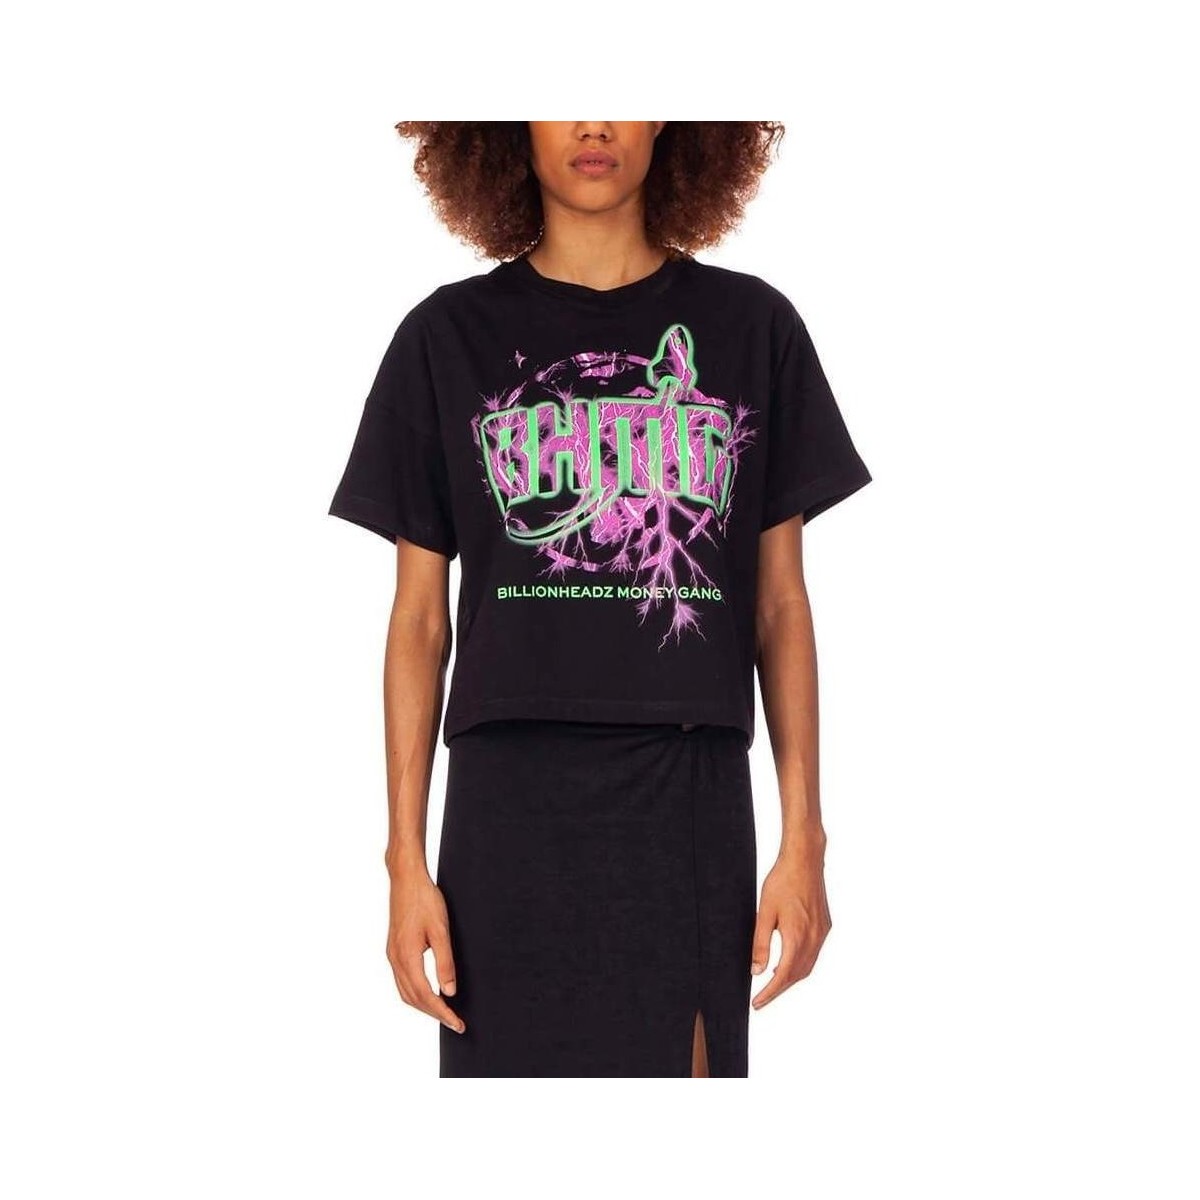 Abbigliamento Donna T-shirt & Polo Bhmg 31320 Multicolore